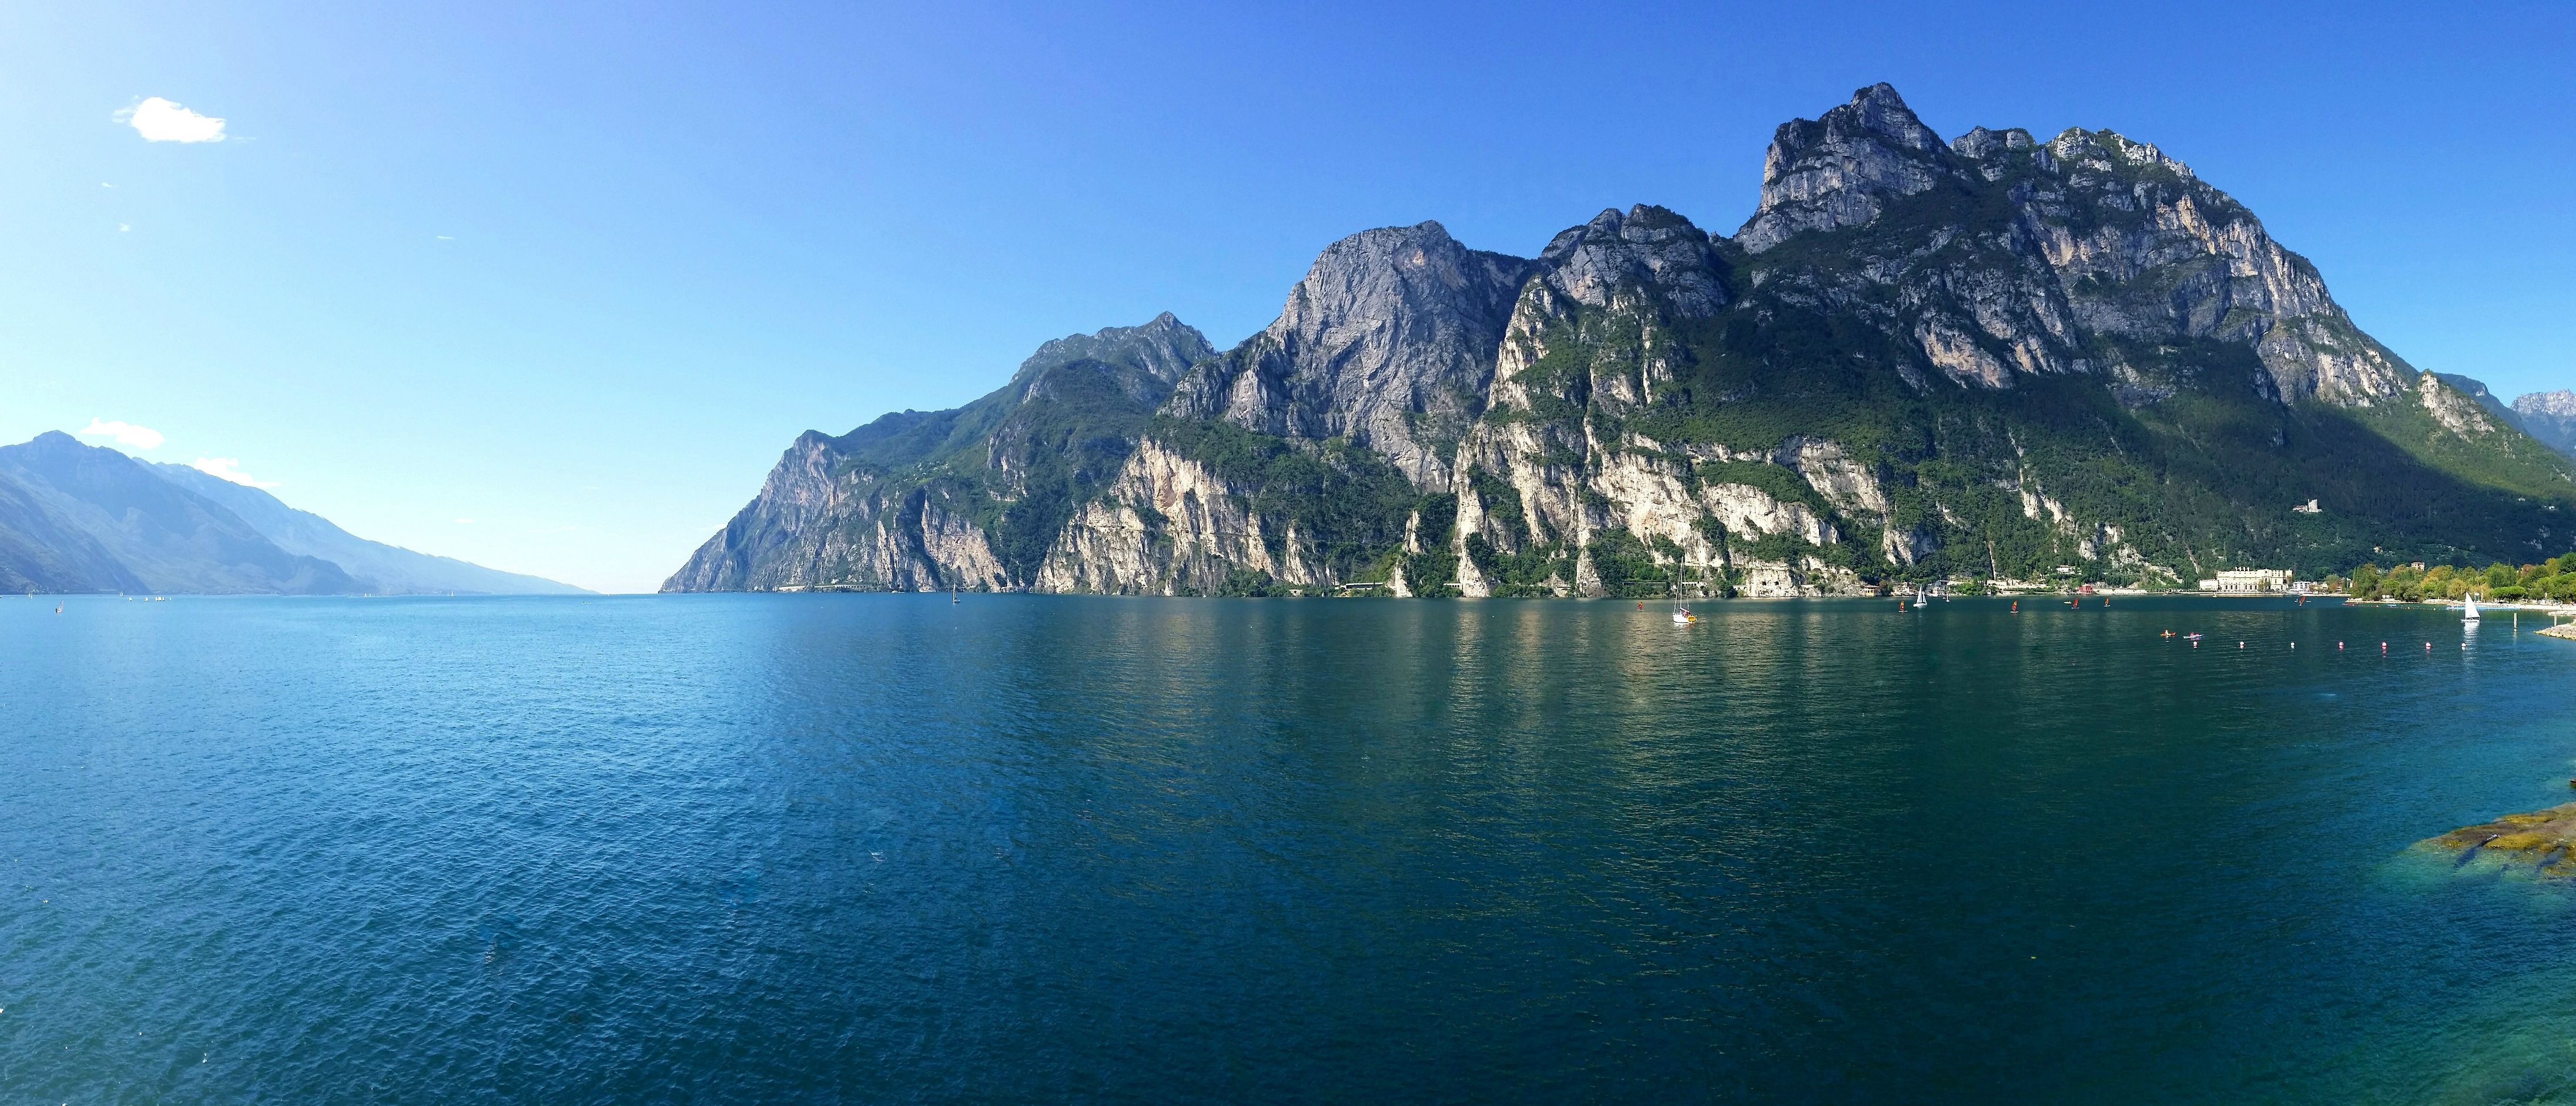 Lake Garda, Italy. Camera phone panorama taken while traveling